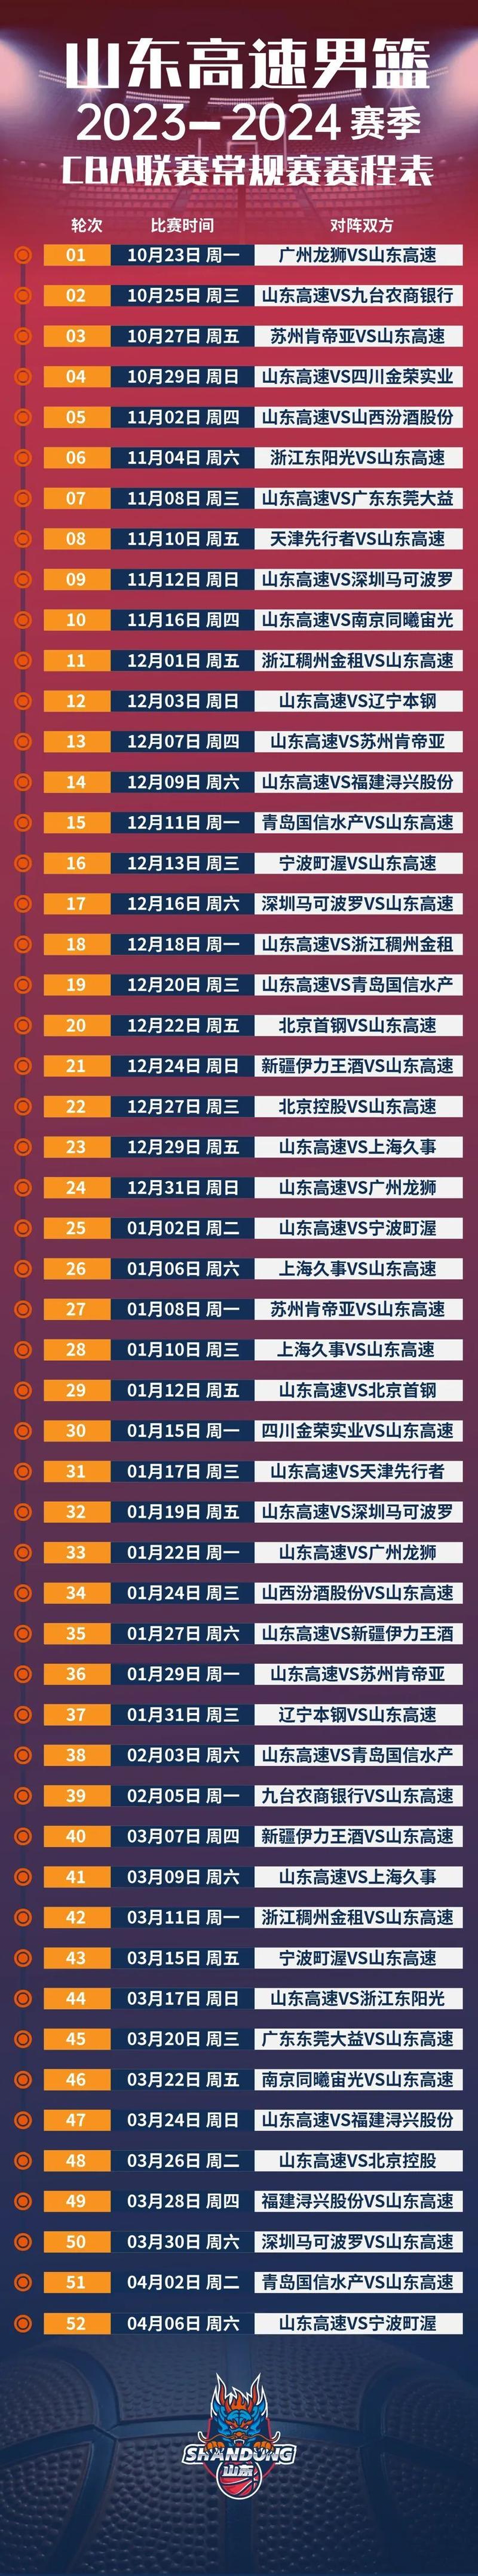 山东男篮赛程时间表第三阶段